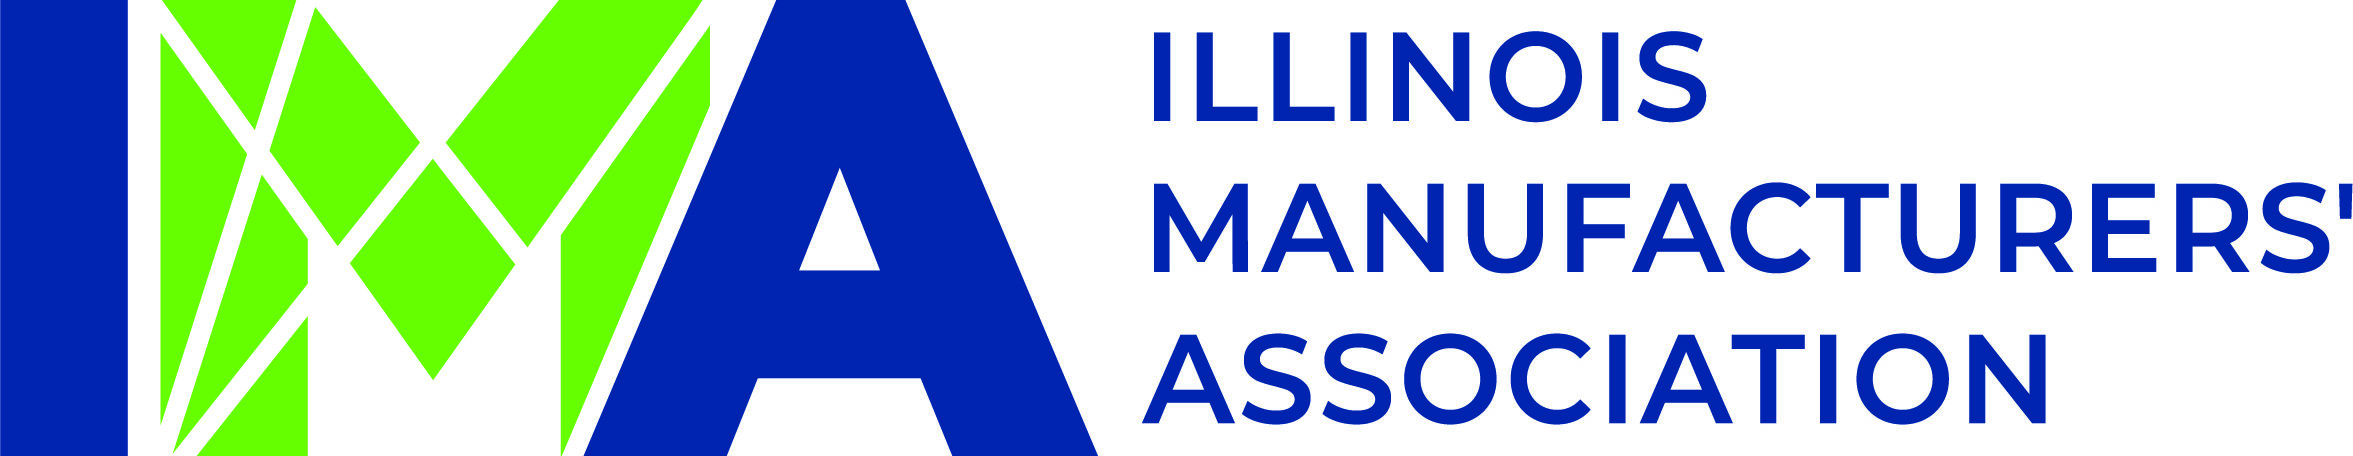 IMA Logo CMYK